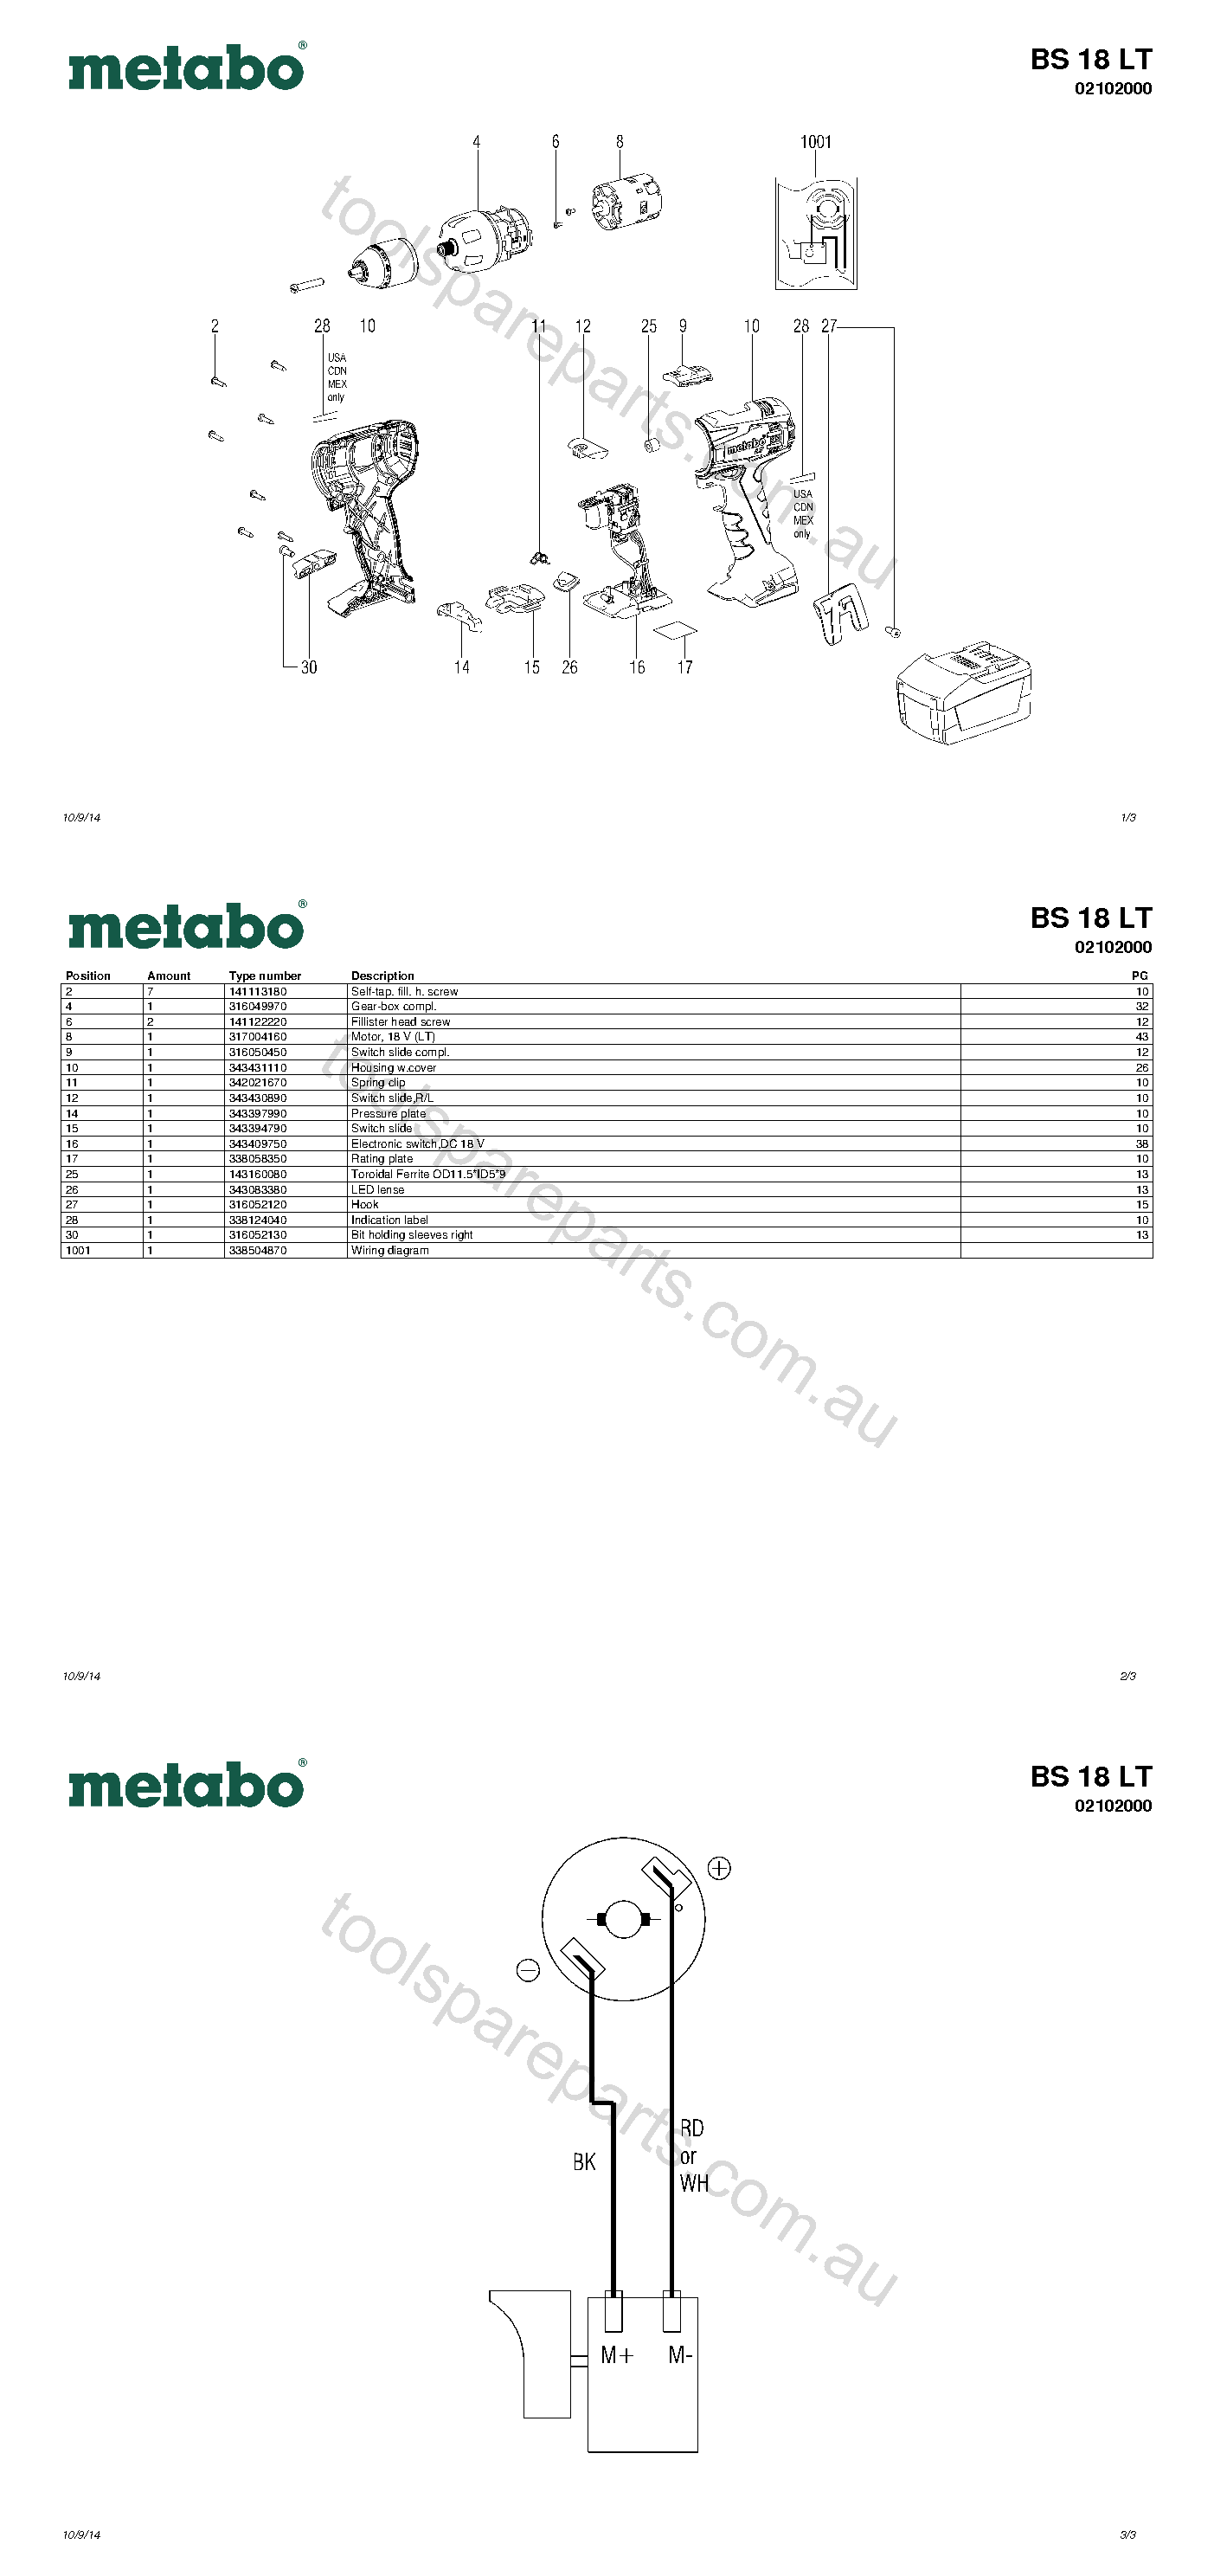 Metabo BS 18 LT 02102000  Diagram 1